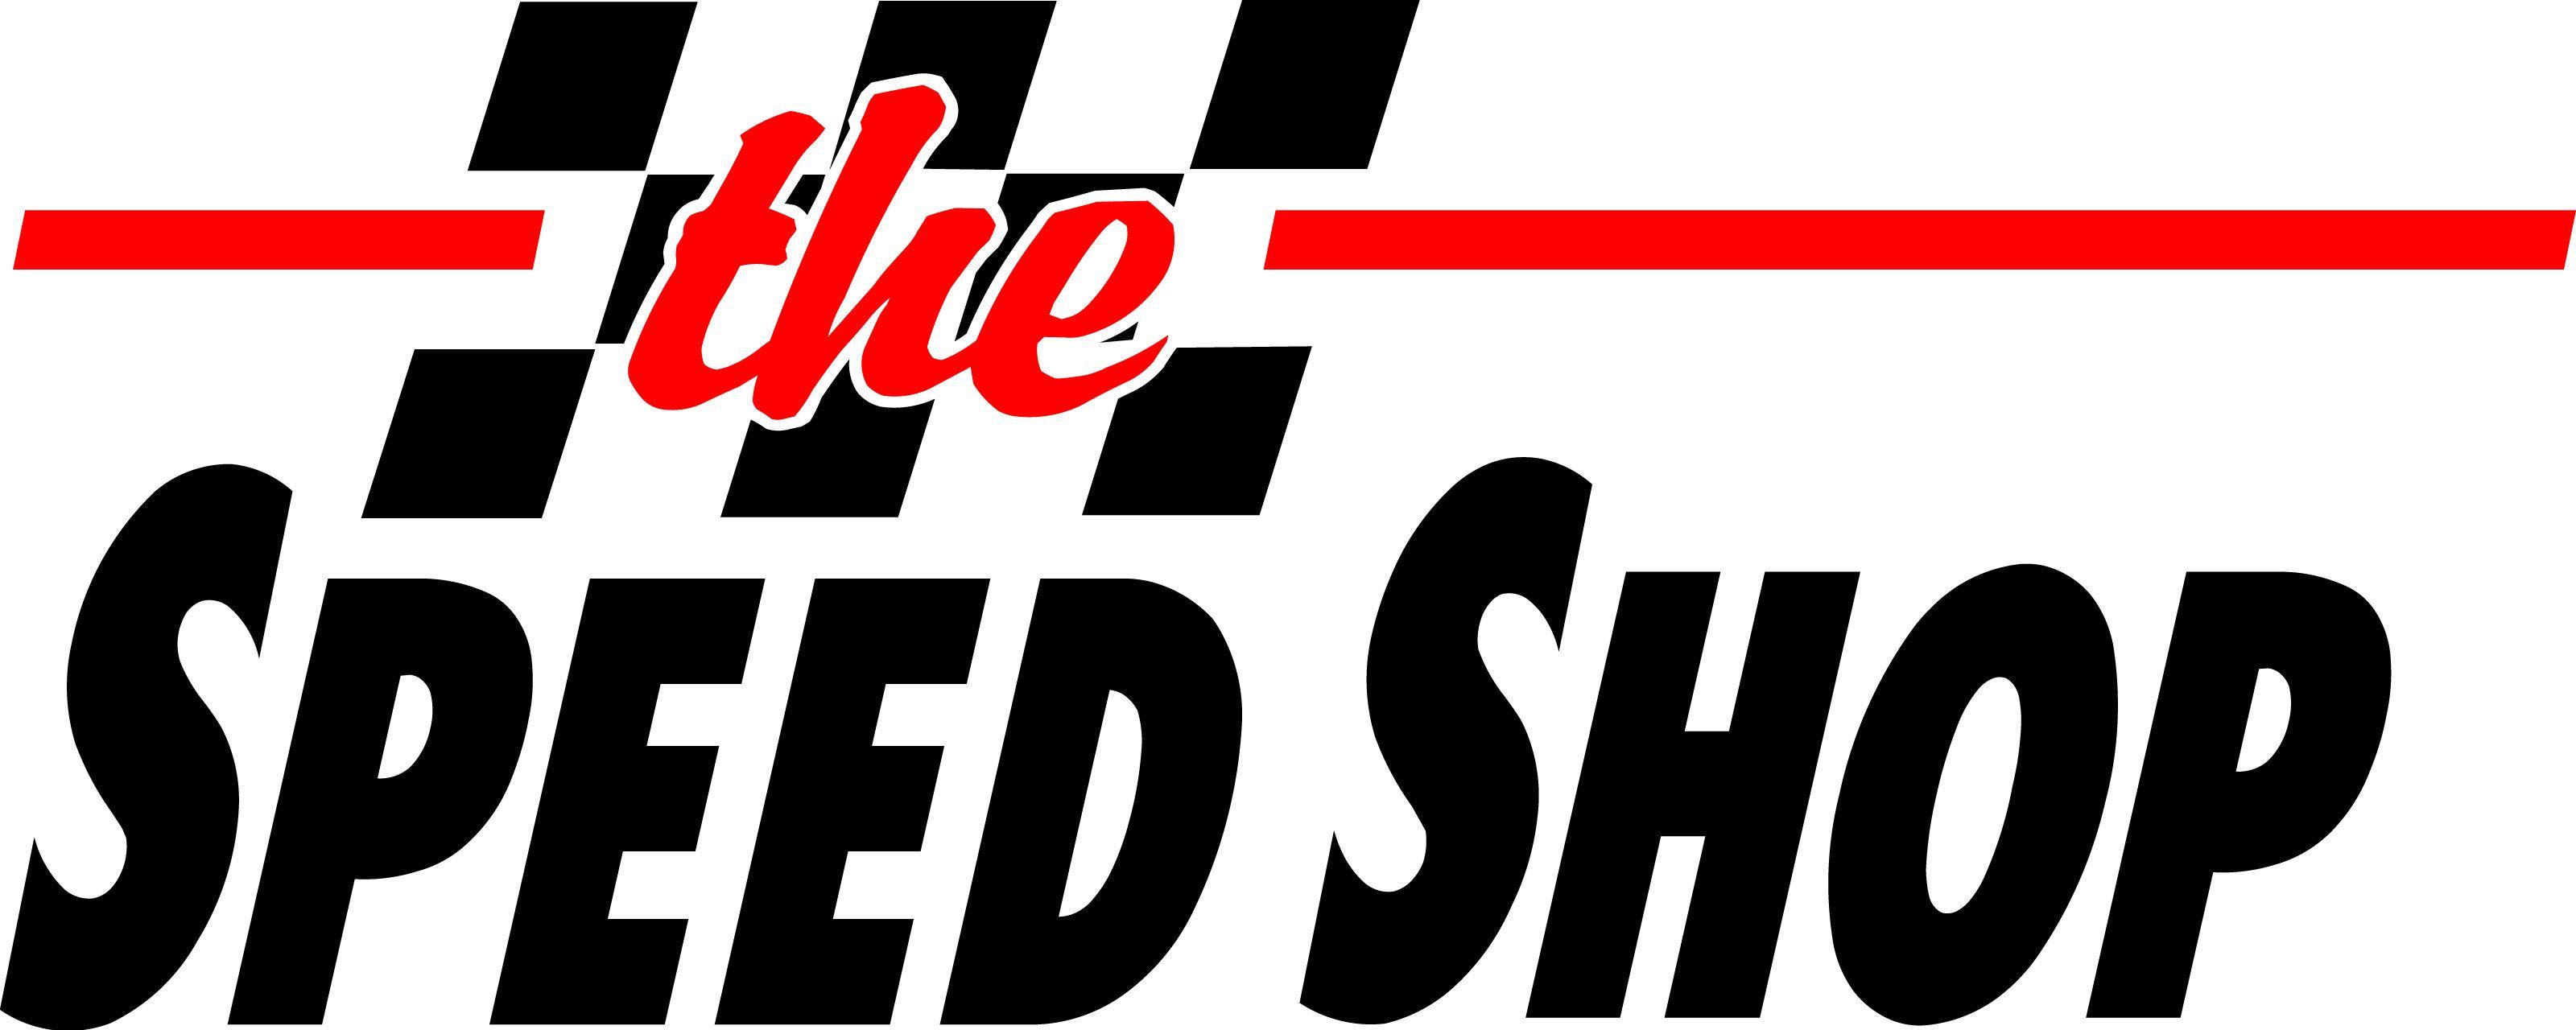 Speed Shop Logo - Speed shop Logos